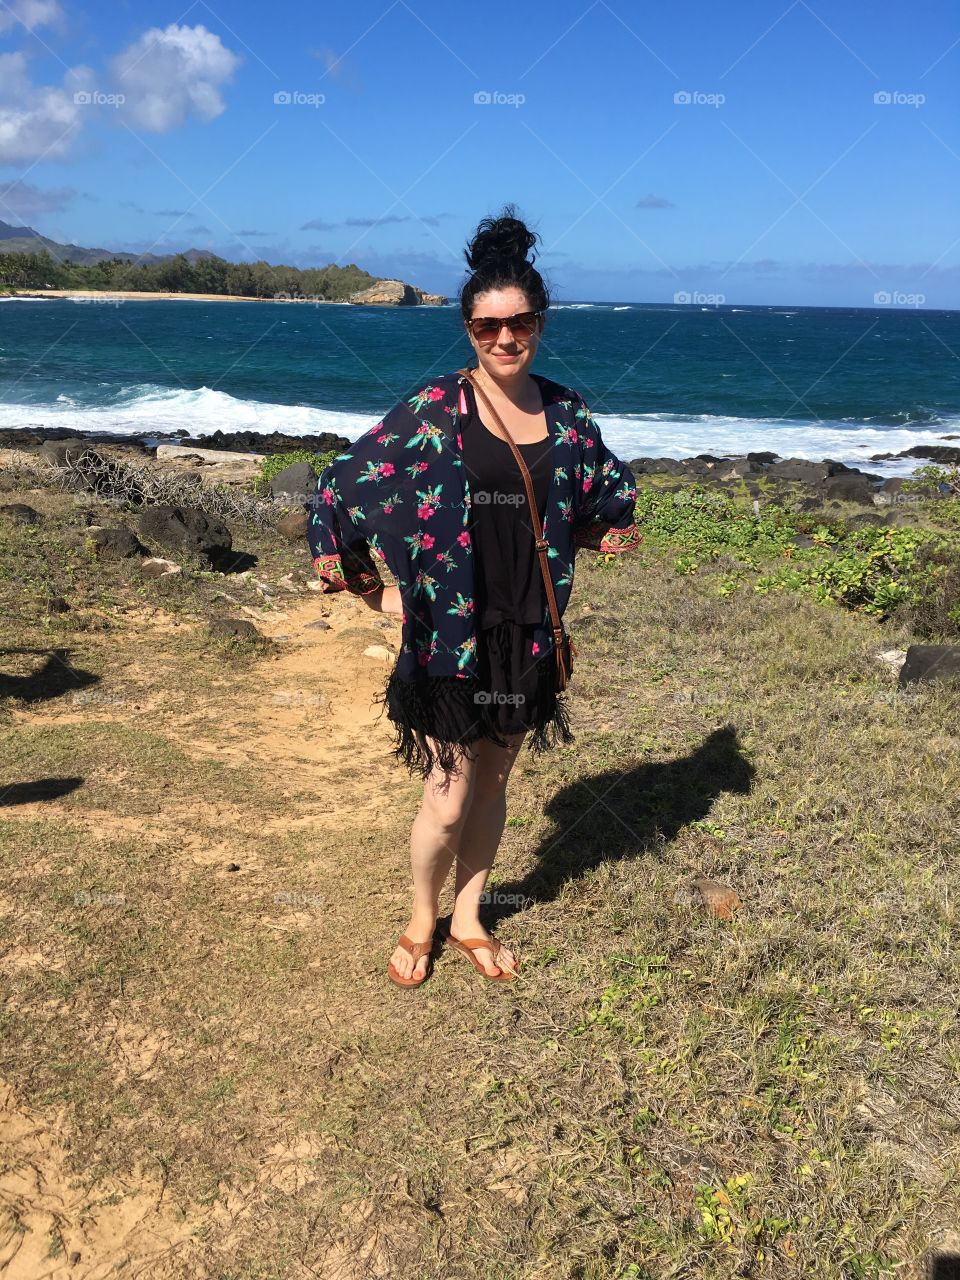 Enjoying Hawaii!